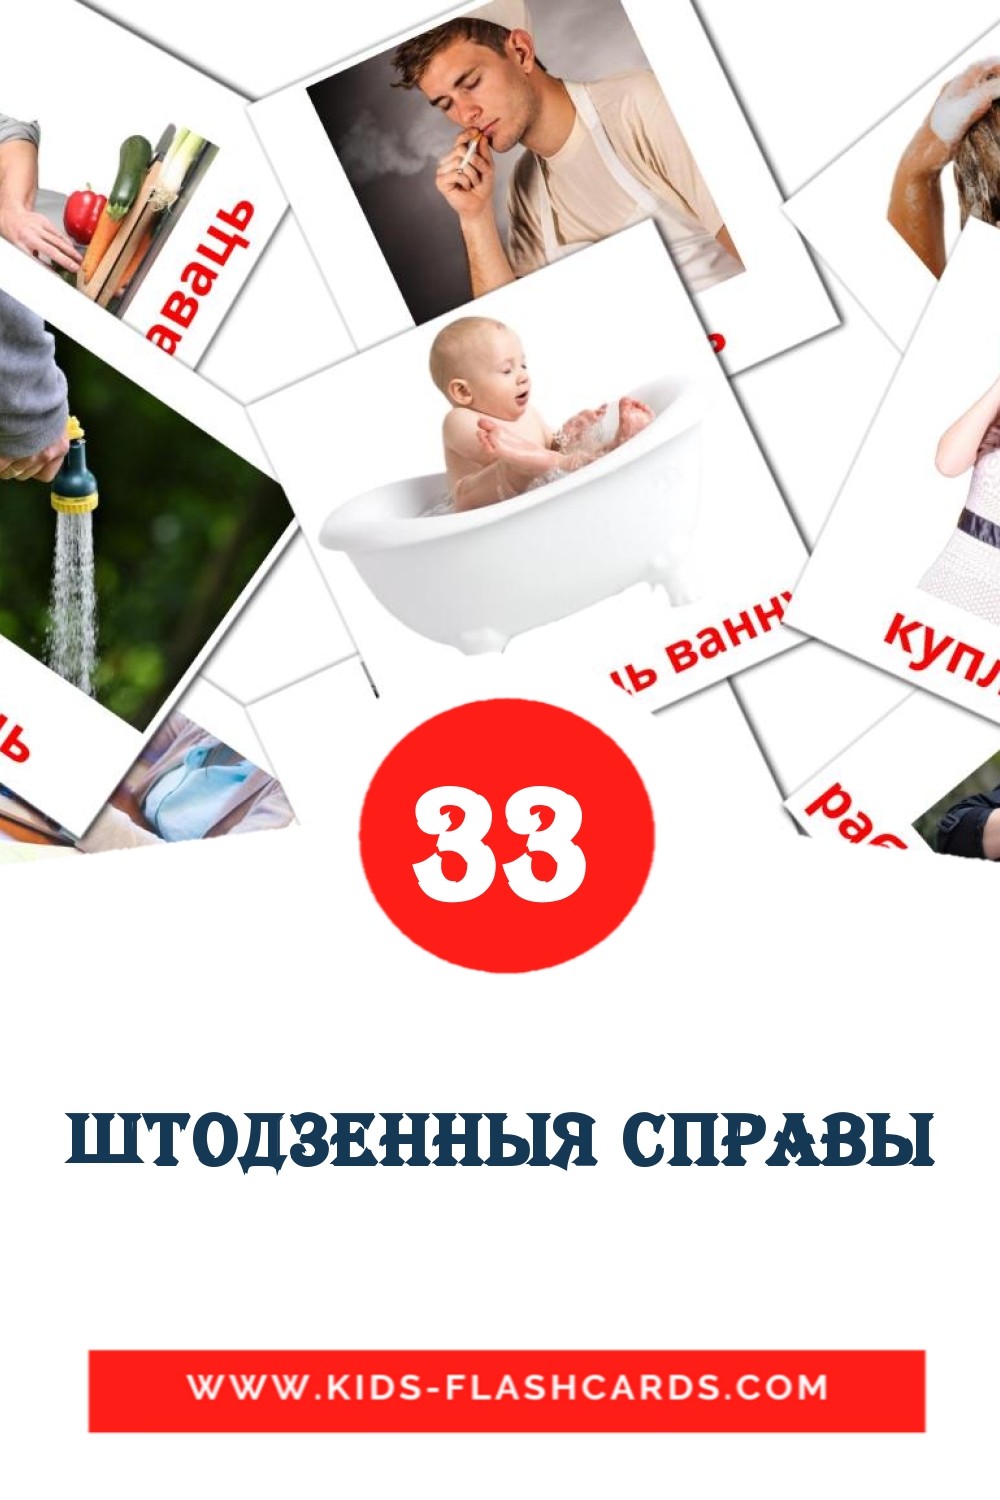 33 штодзенныя справы Bildkarten für den Kindergarten auf Weißrussisch